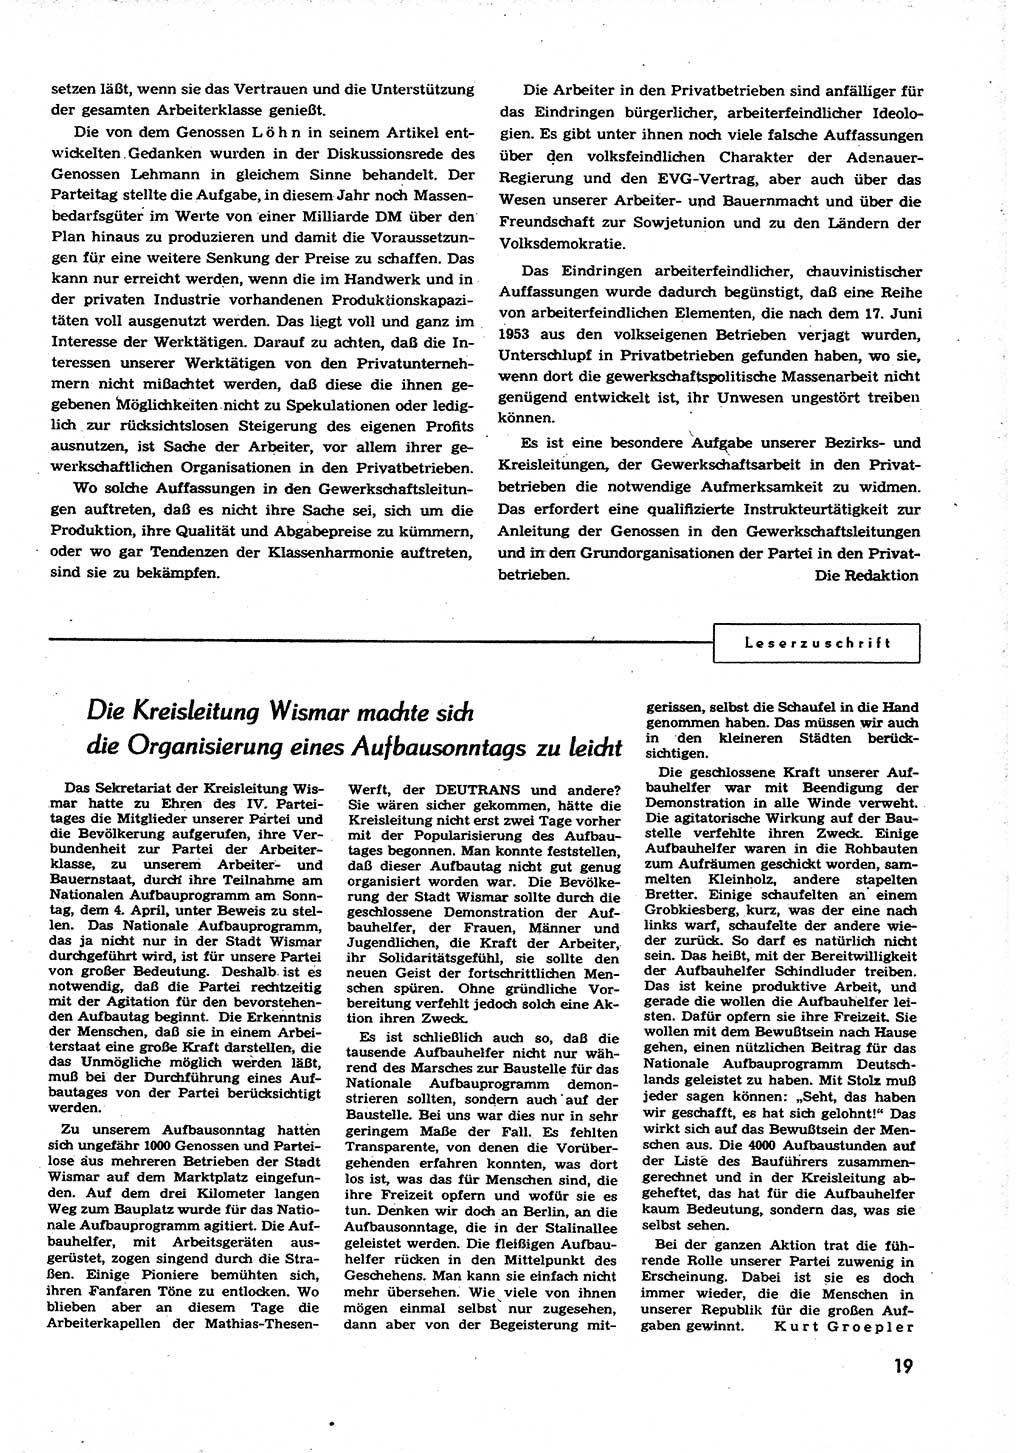 Neuer Weg (NW), Organ des Zentralkomitees (ZK) der SED (Sozialistische Einheitspartei Deutschlands) für alle Parteiarbeiter, 9. Jahrgang [Deutsche Demokratische Republik (DDR)] 1954, Heft 9/19 (NW ZK SED DDR 1954, H. 9/19)